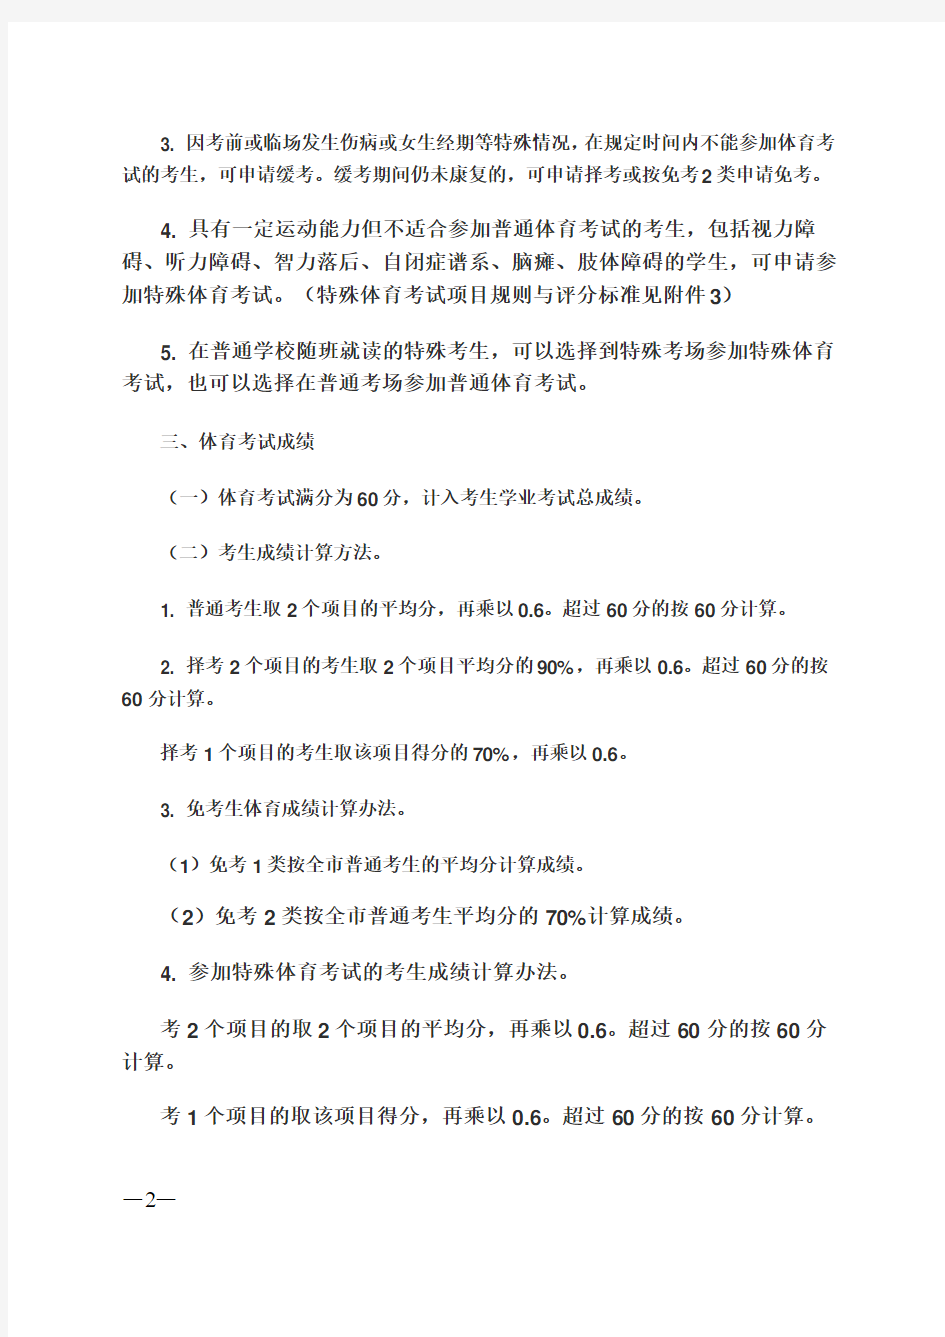 2012年广州中考体育项目规则及评分标准